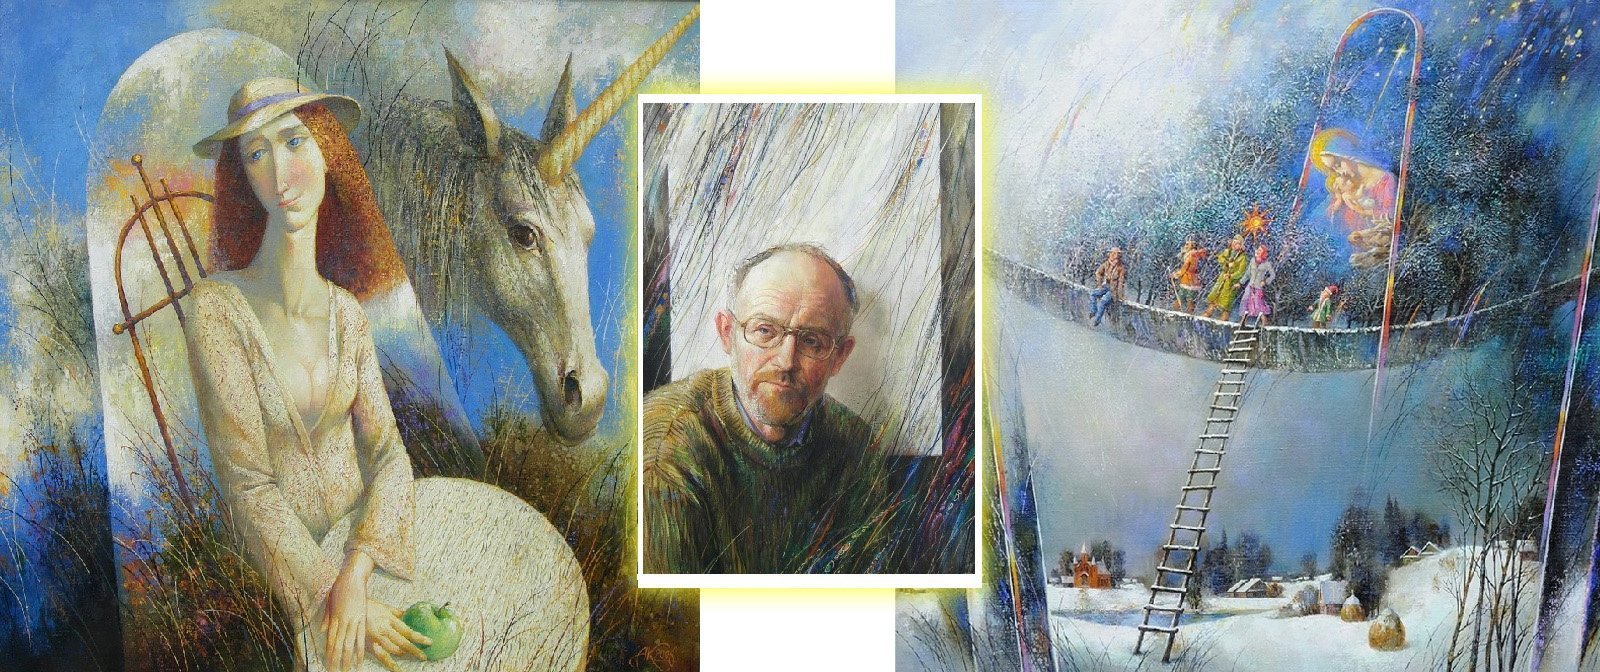 Жизнь как сказка. Удивительные и светлые картины белорусского художника  Анатолия Концуба, дарящие хорошее настроение.